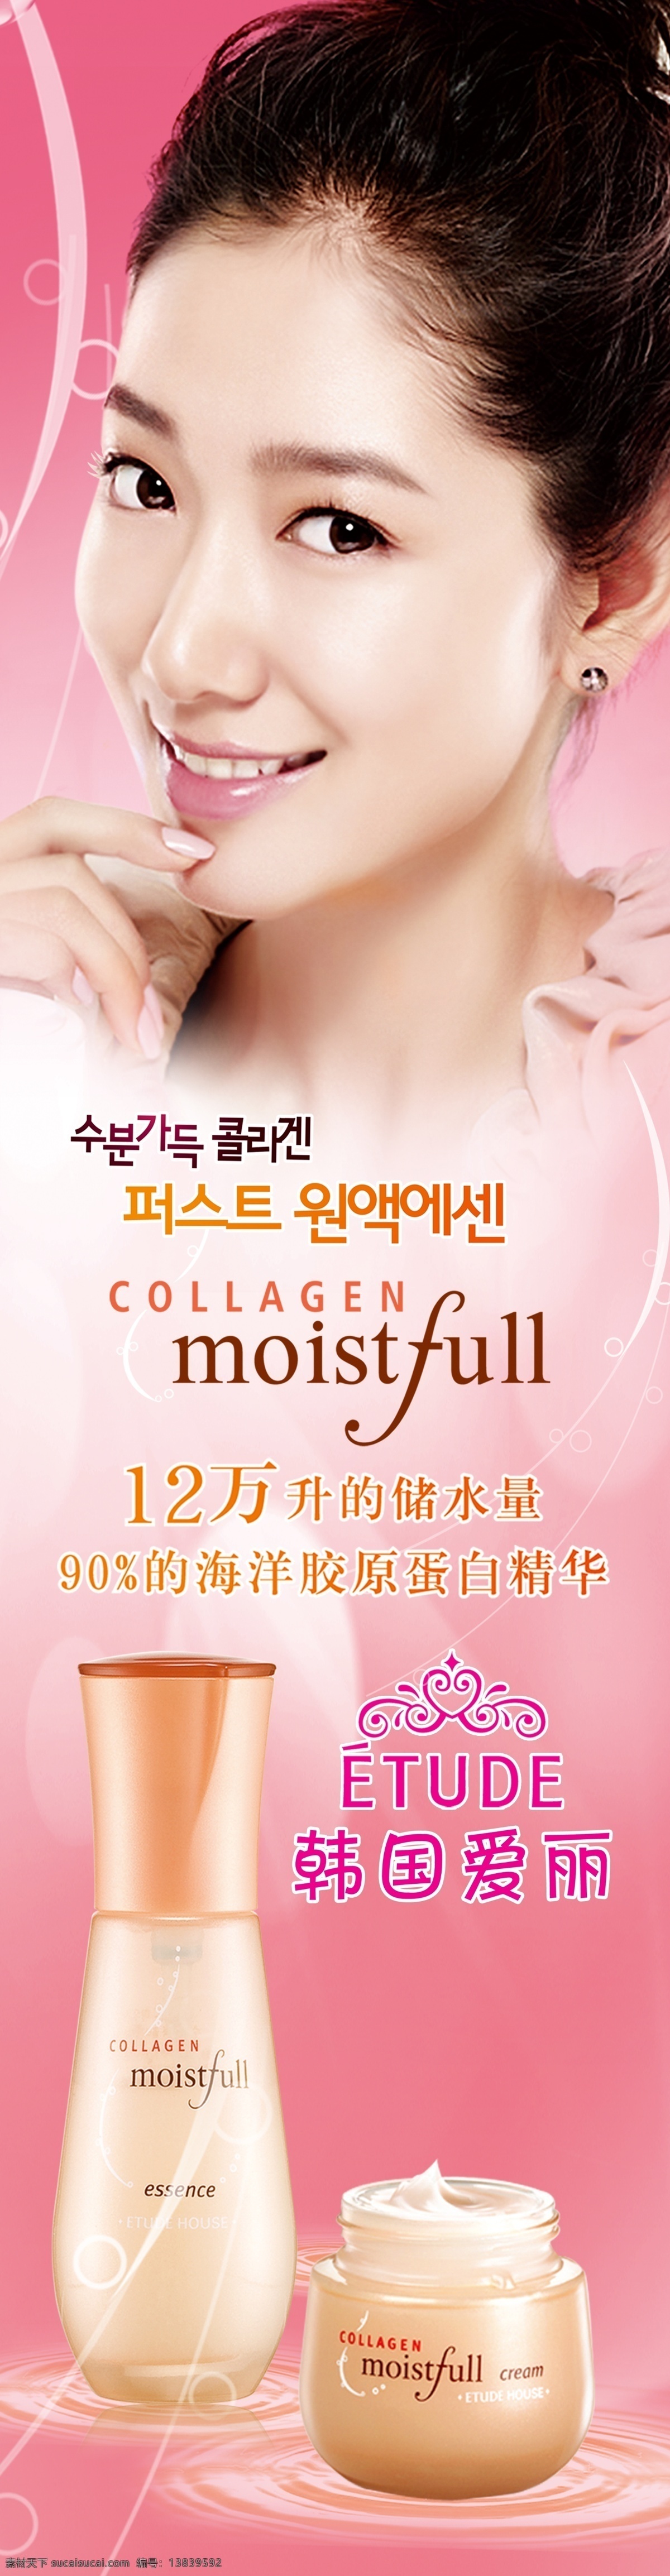 韩国 爱丽 　 化妆品 护肤品 人物 标志 psd源文件